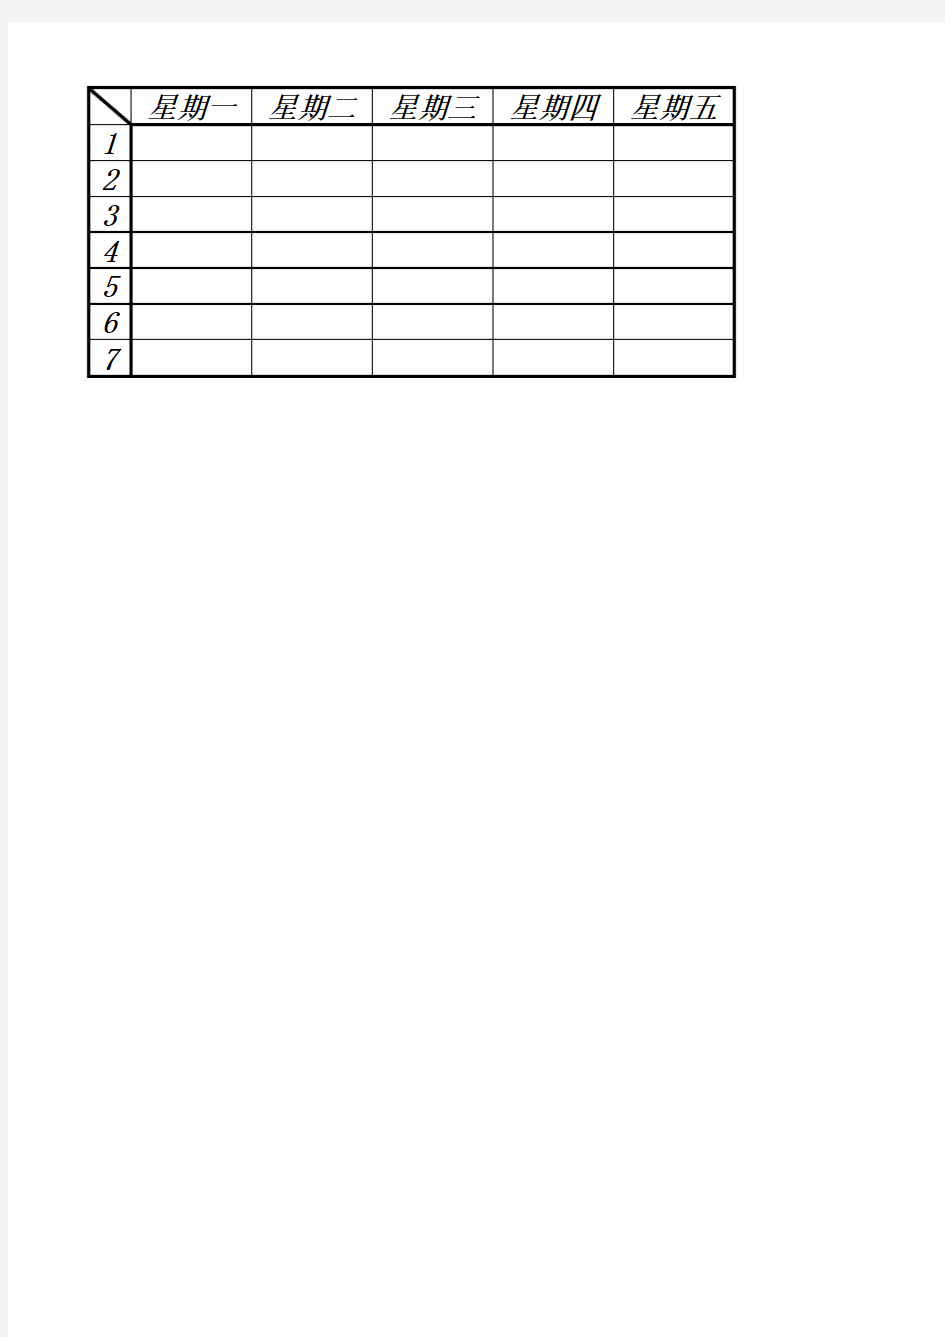 小学课程表(空白模板)